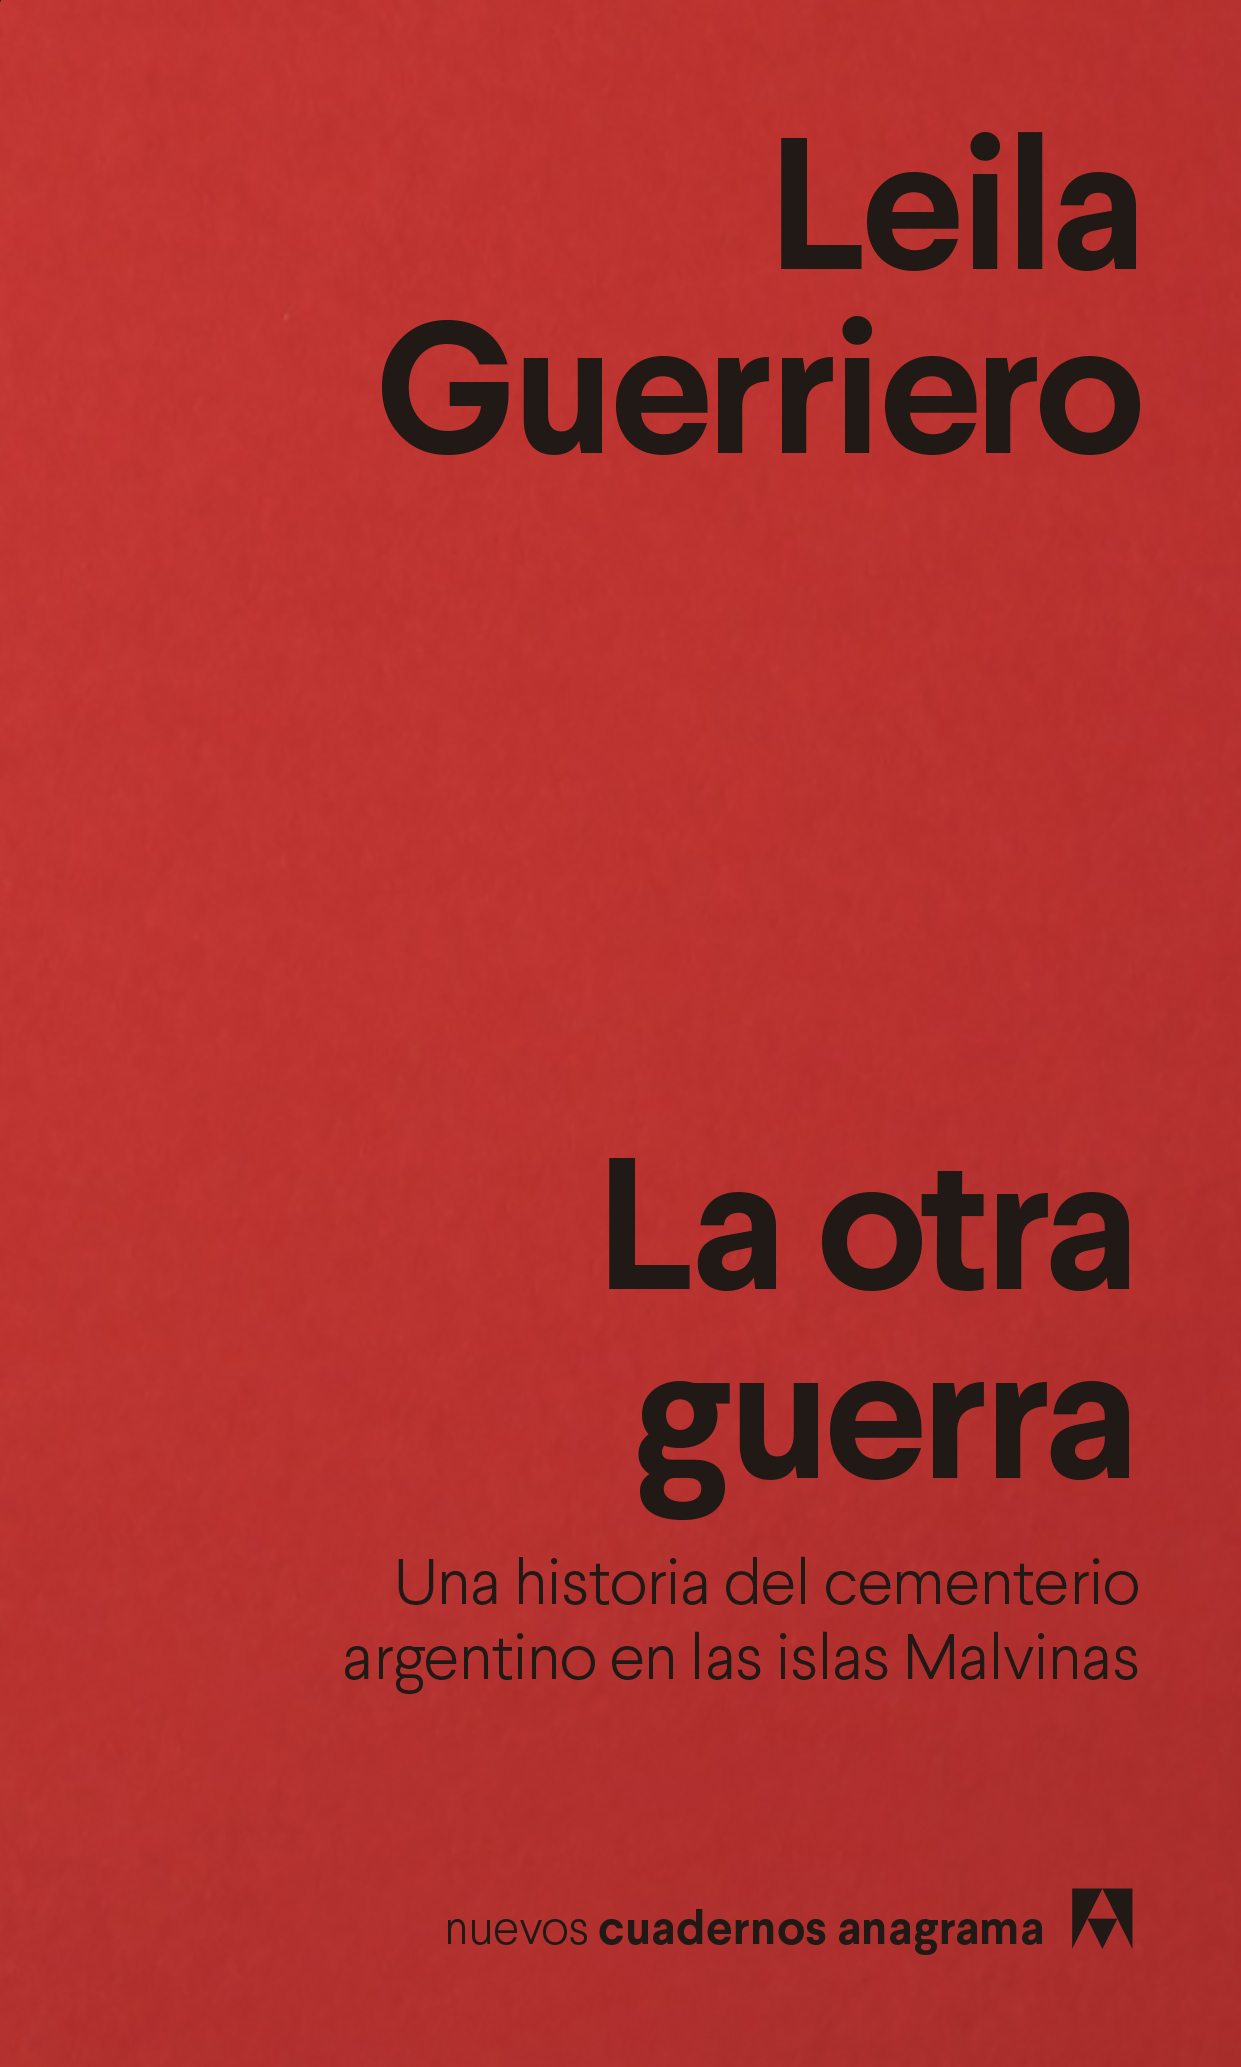 La otra guerra - Guerriero, Leila - 978-84-339-1648-8 - Editorial Anagrama